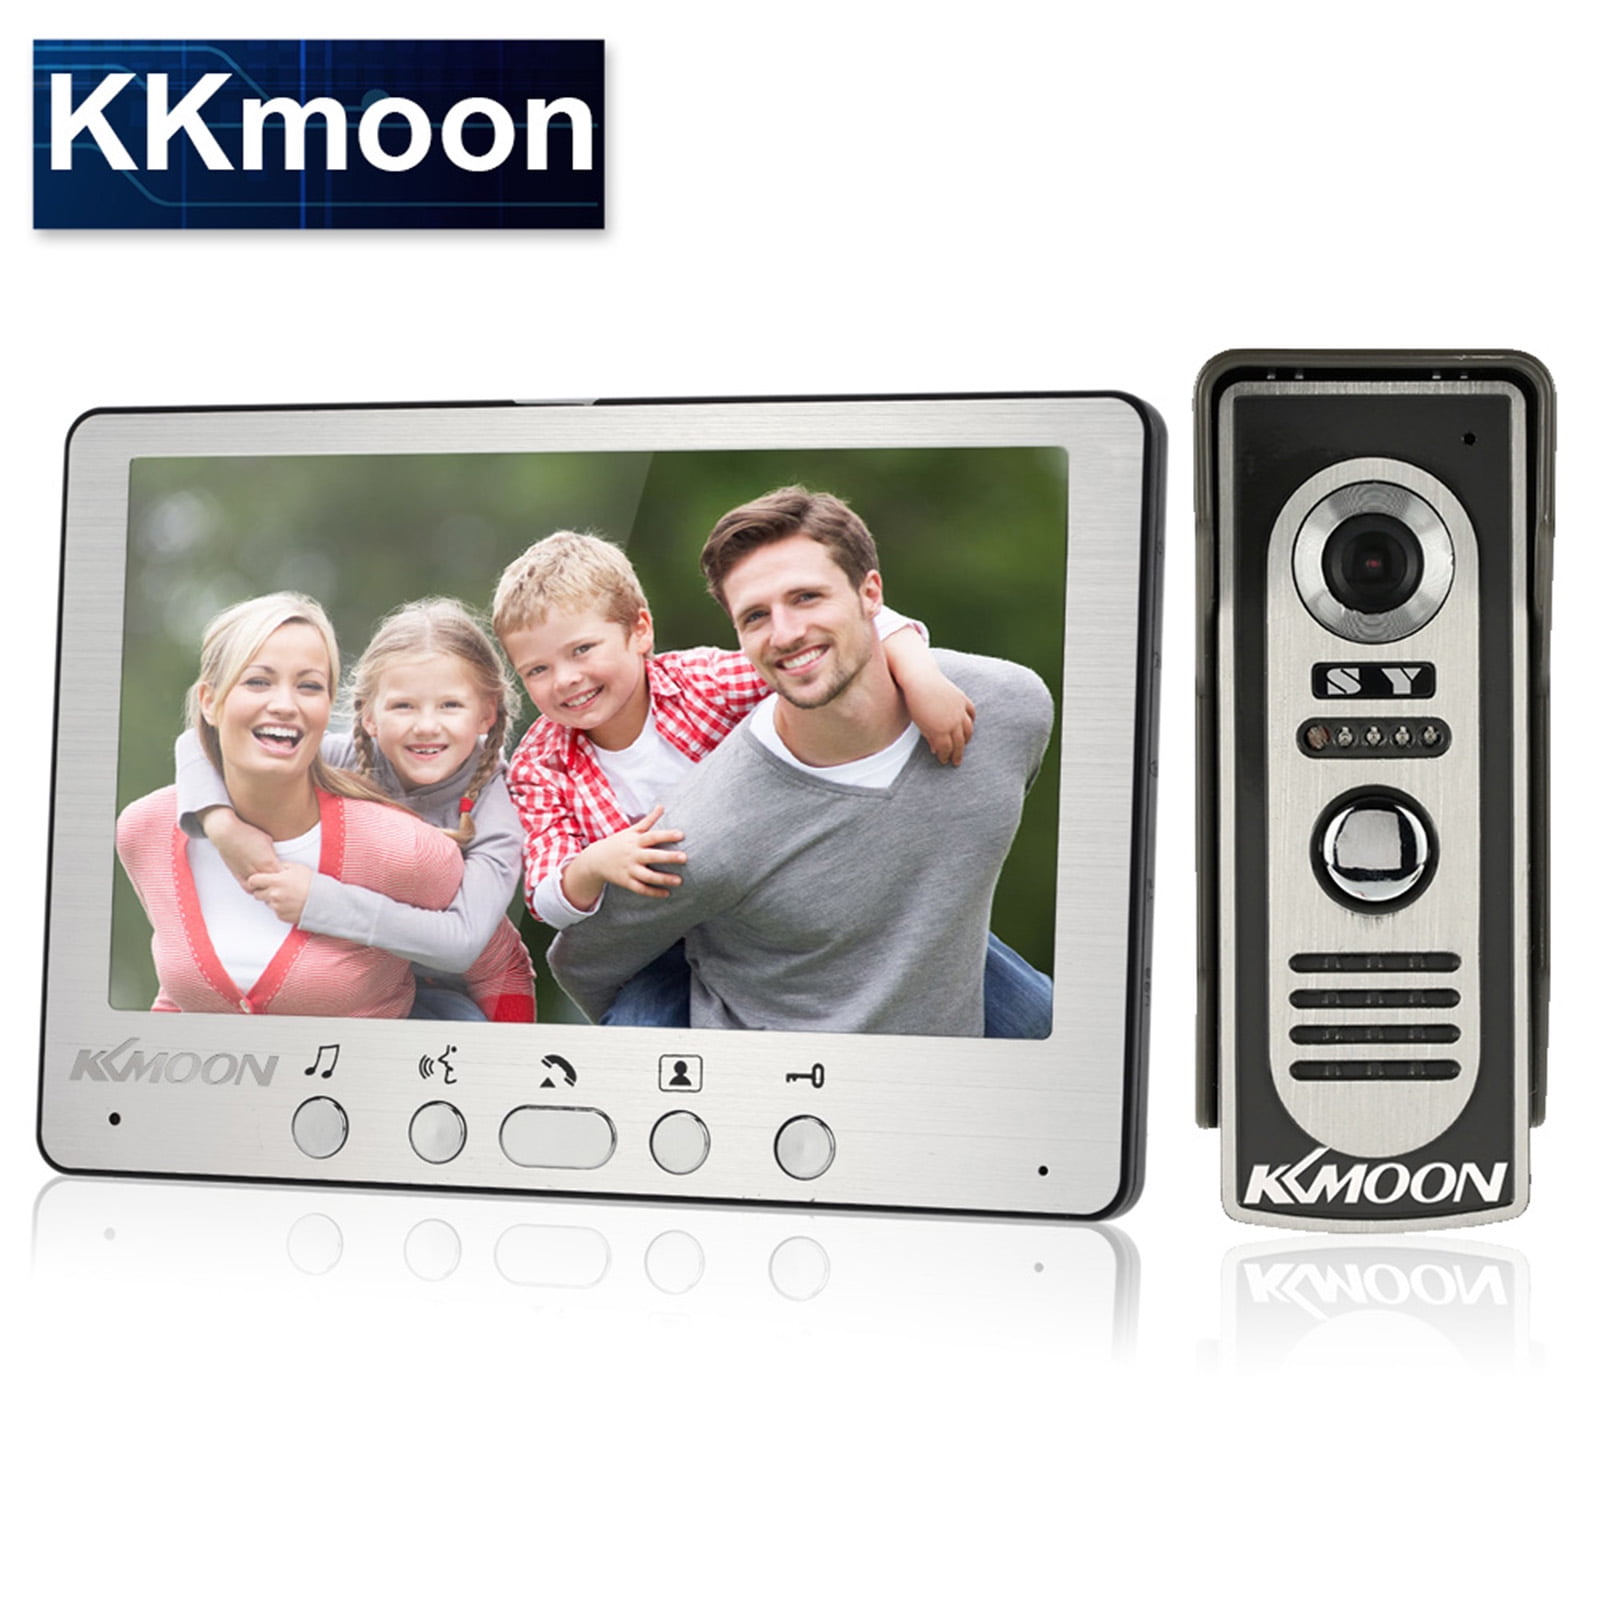 KKMOON 7" LCD Video Door Phone Intercom Doorbell IR Night Vision Home Security 